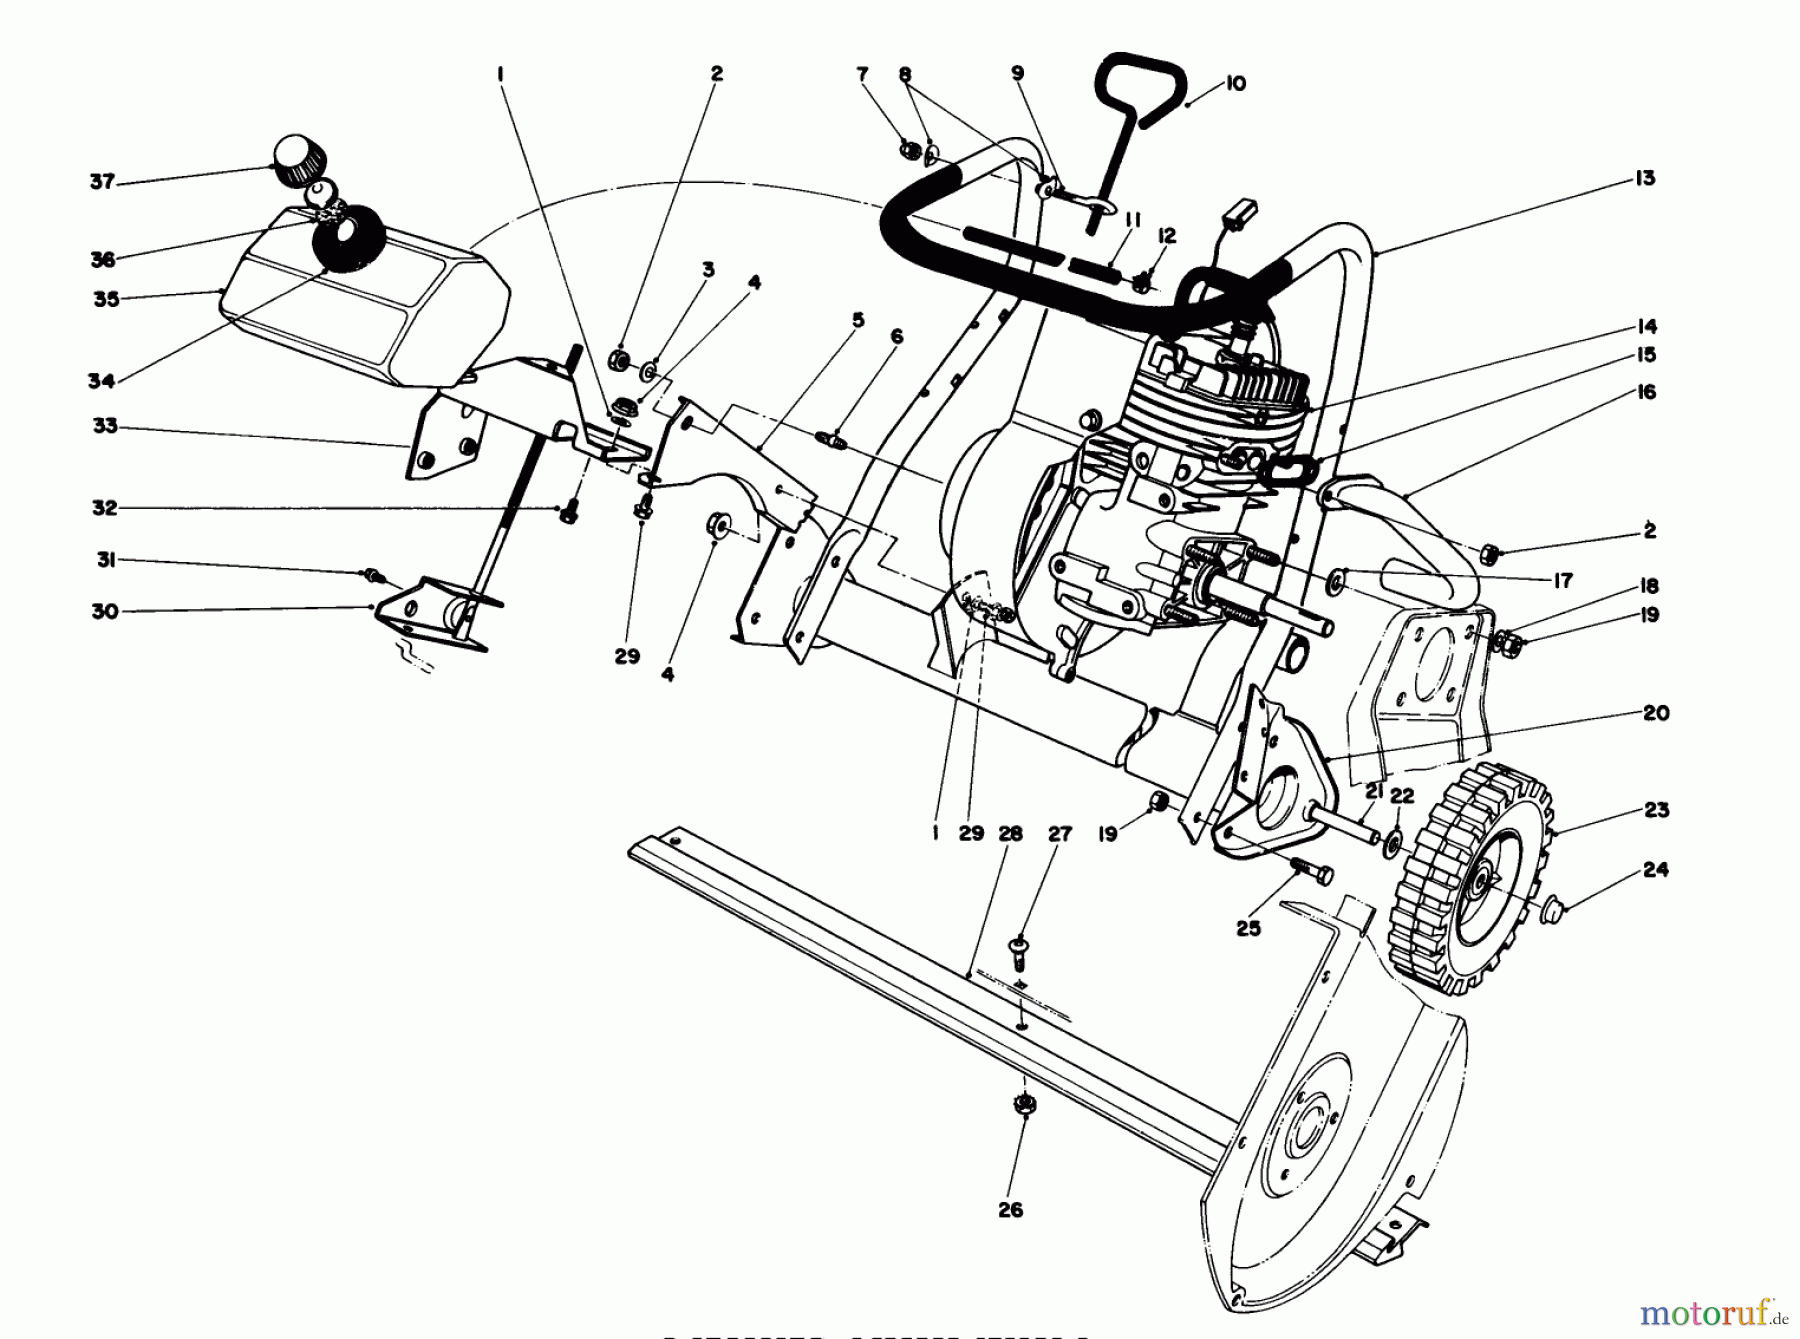  Toro Neu Snow Blowers/Snow Throwers Seite 1 38165 (S-620) - Toro S-620 Snowthrower, 1985 (5010001-5999999) ENGINE ASSEMBLY